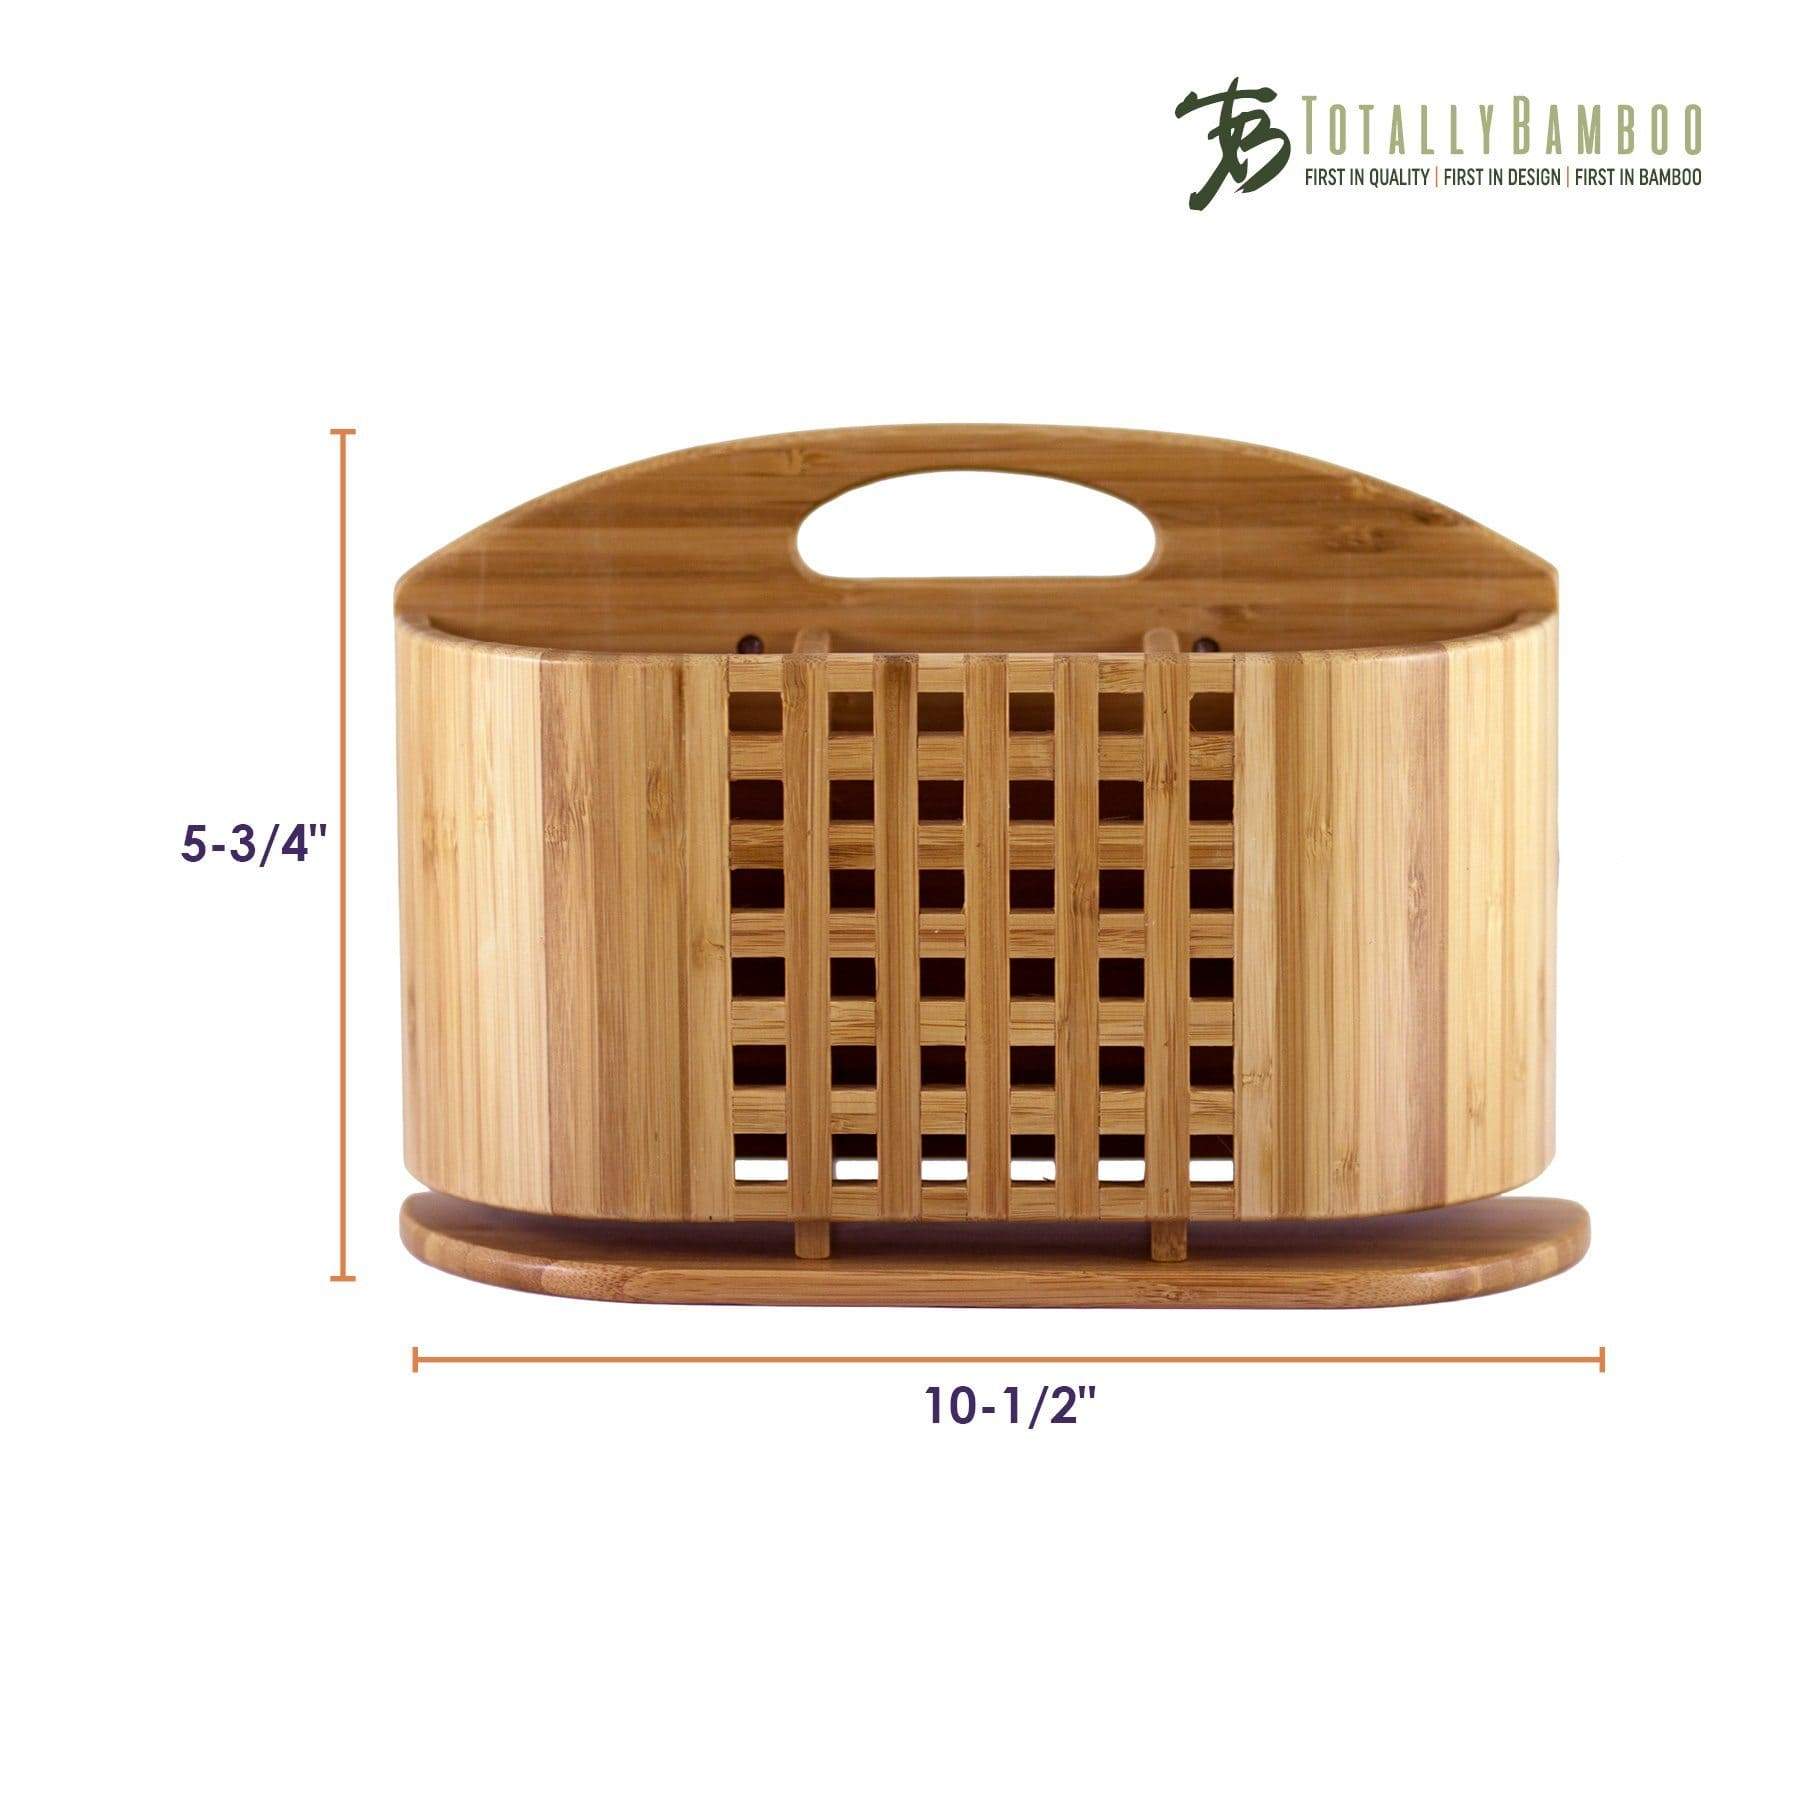 https://totallybamboo.com/cdn/shop/products/eco-dish-rack-utensil-holder-totally-bamboo-845991.jpg?v=1627674209